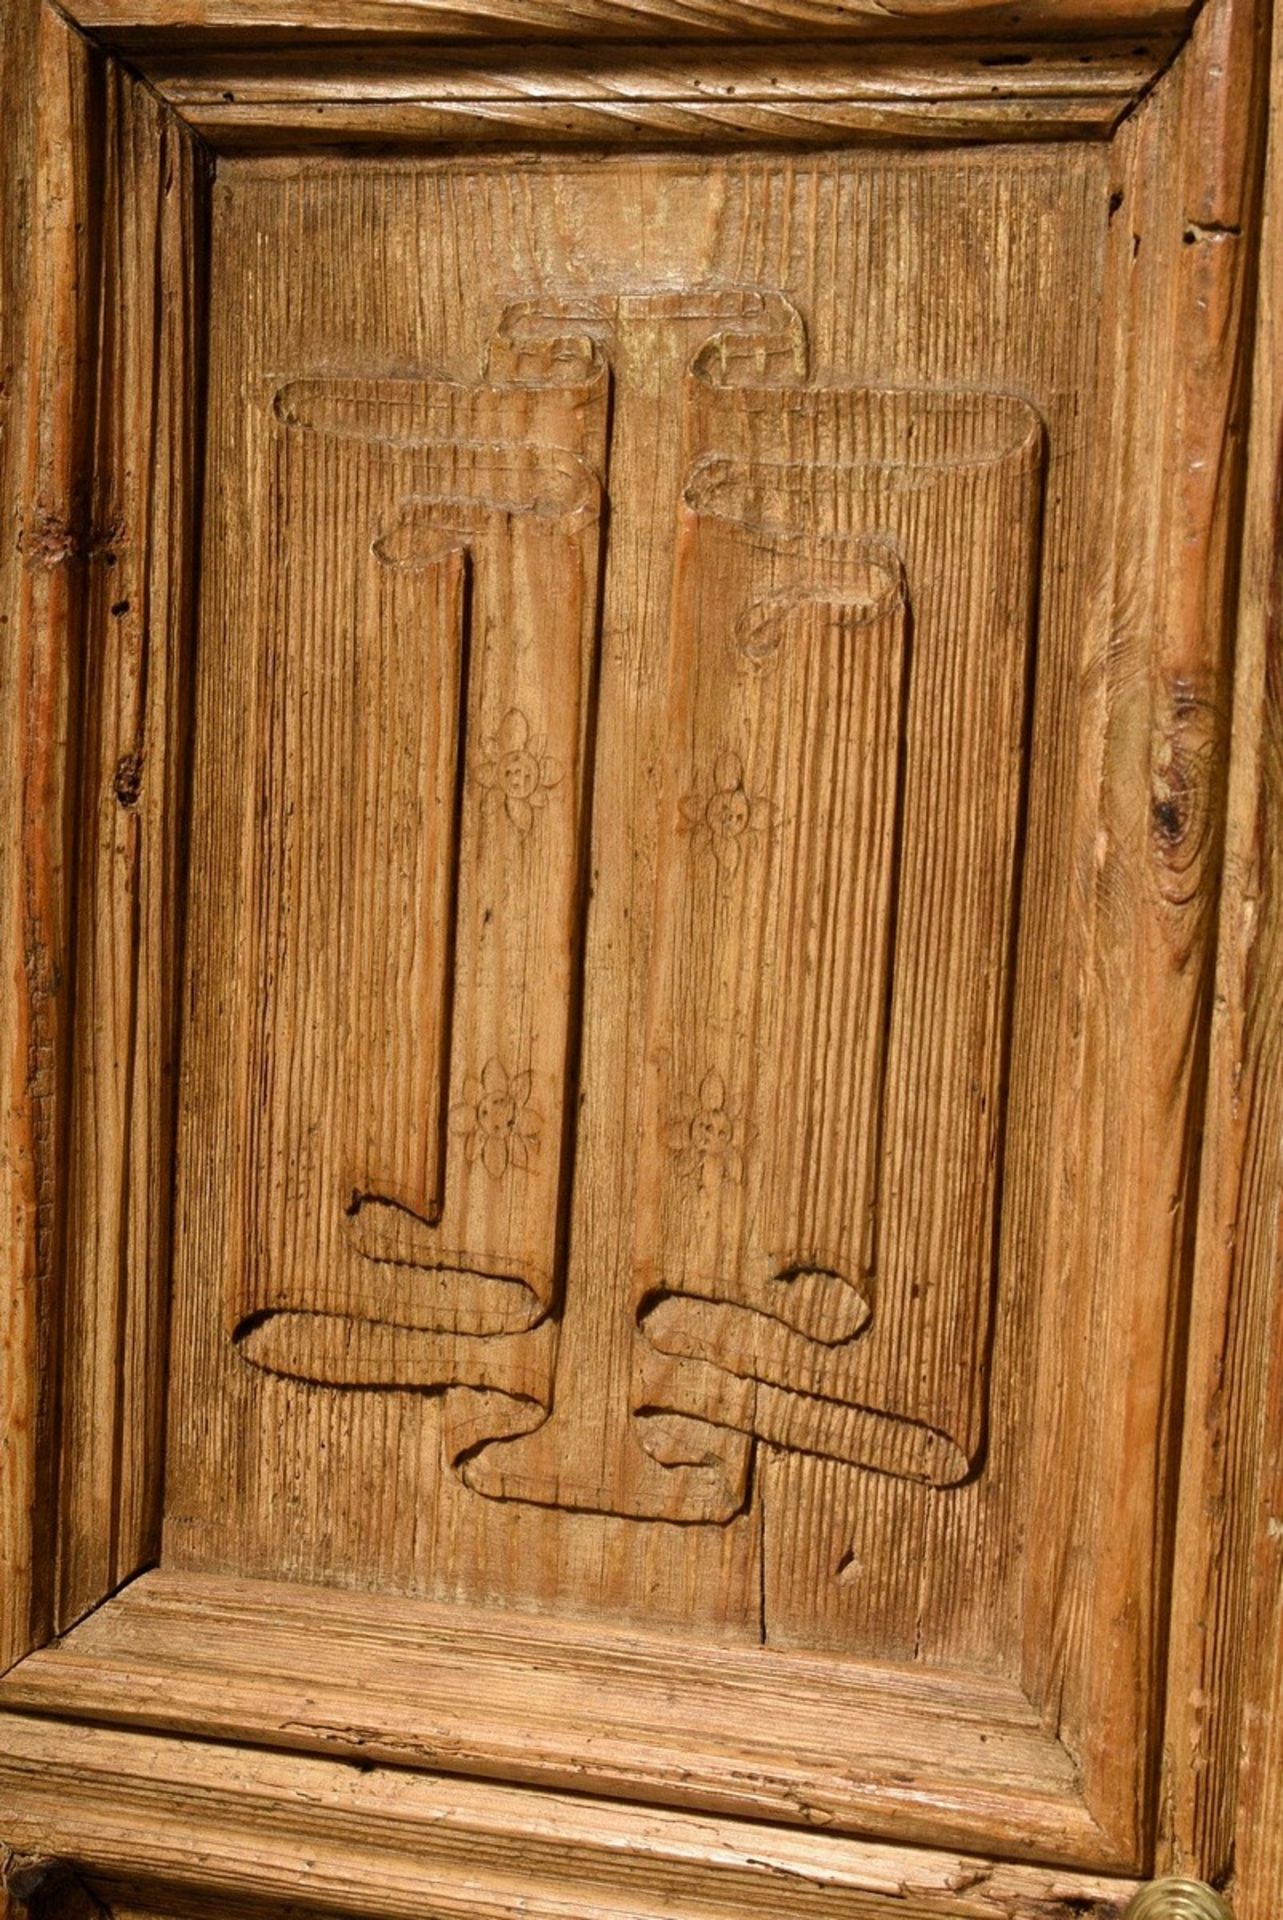 2 Eichen Türen mit Faltwerk Reliefschnitzereien in gotischer Façon in den Füllungen, Nadelholz, Mes - Bild 3 aus 9